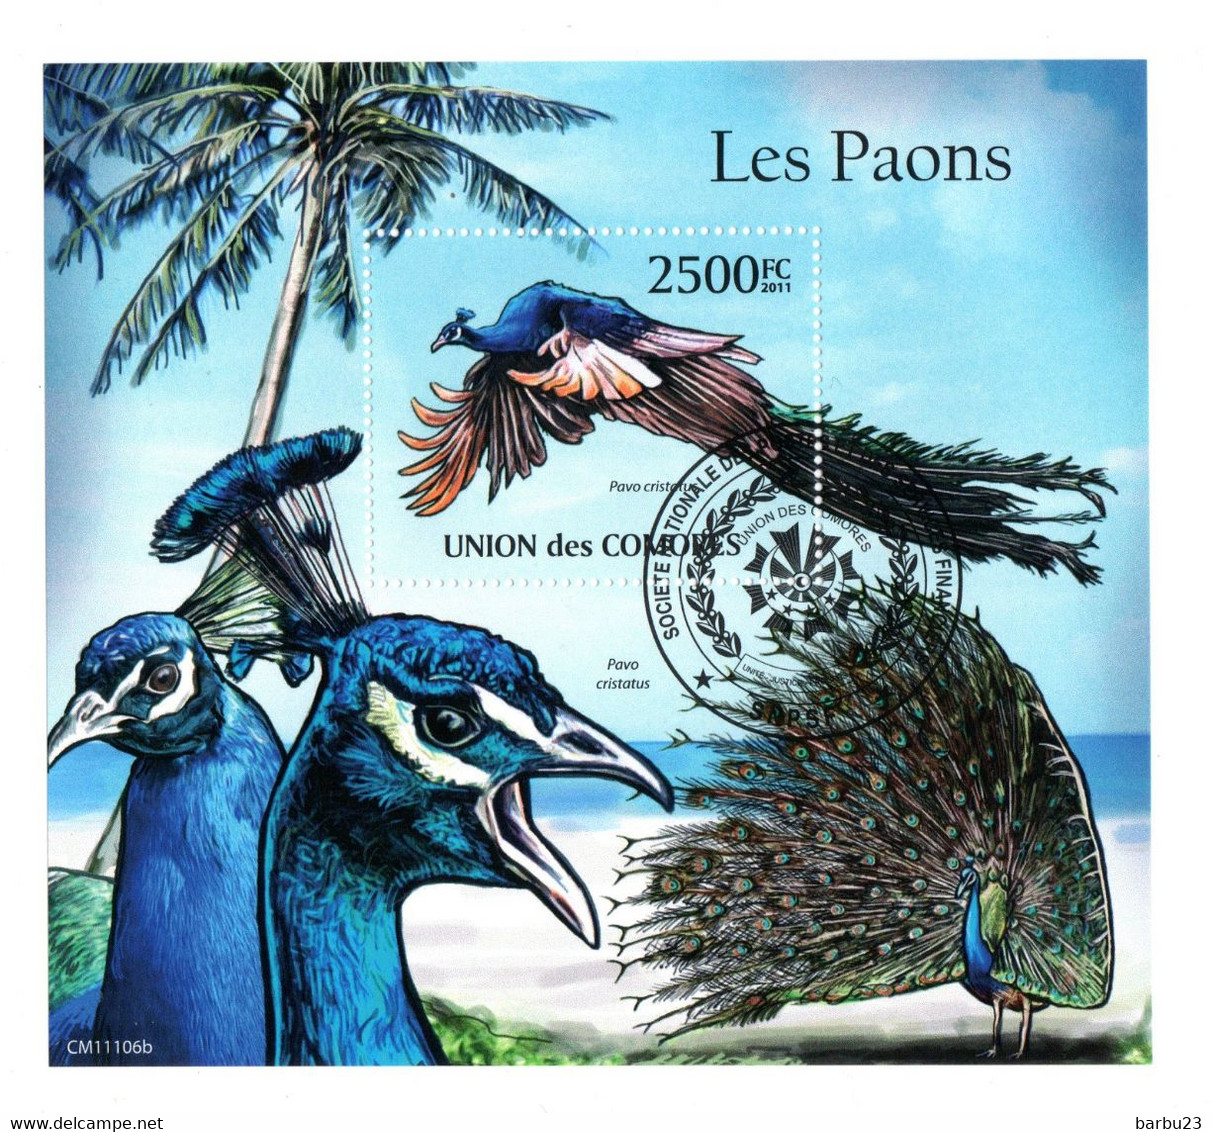 Les Paons Bloc De L'Union Des Comores - Paons